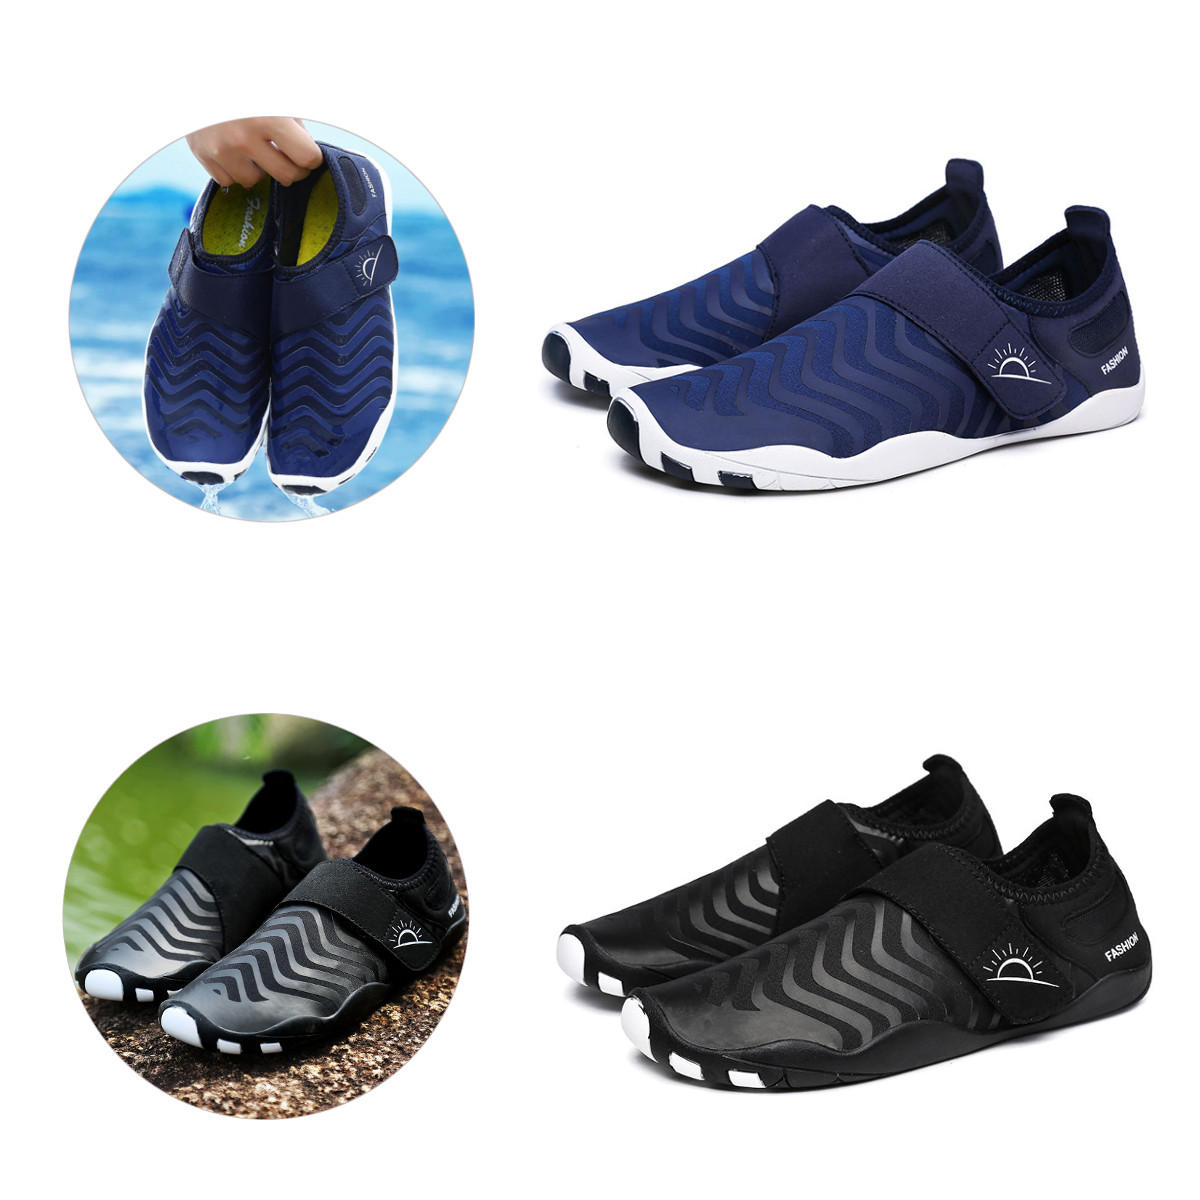 Ριγωτά υπερελαφριά παπούτσια βάδην, γρήγορο στέγνωμα, εύκολο να φορεθούν, κατάλληλα για αθλήματα στον αέρα, κολύμβηση και γιόγκα.